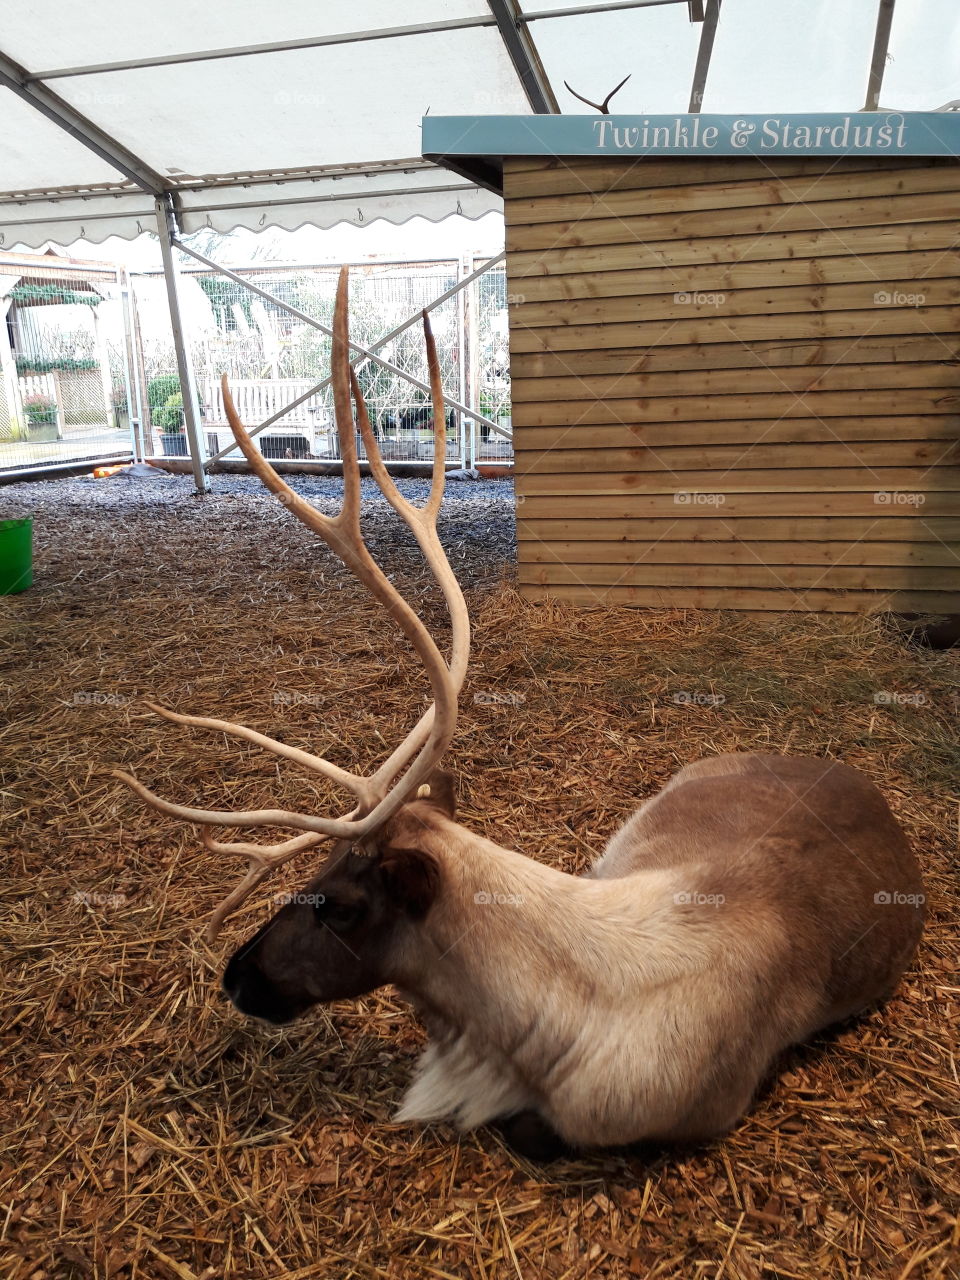 Santa's reindeer taking a rest